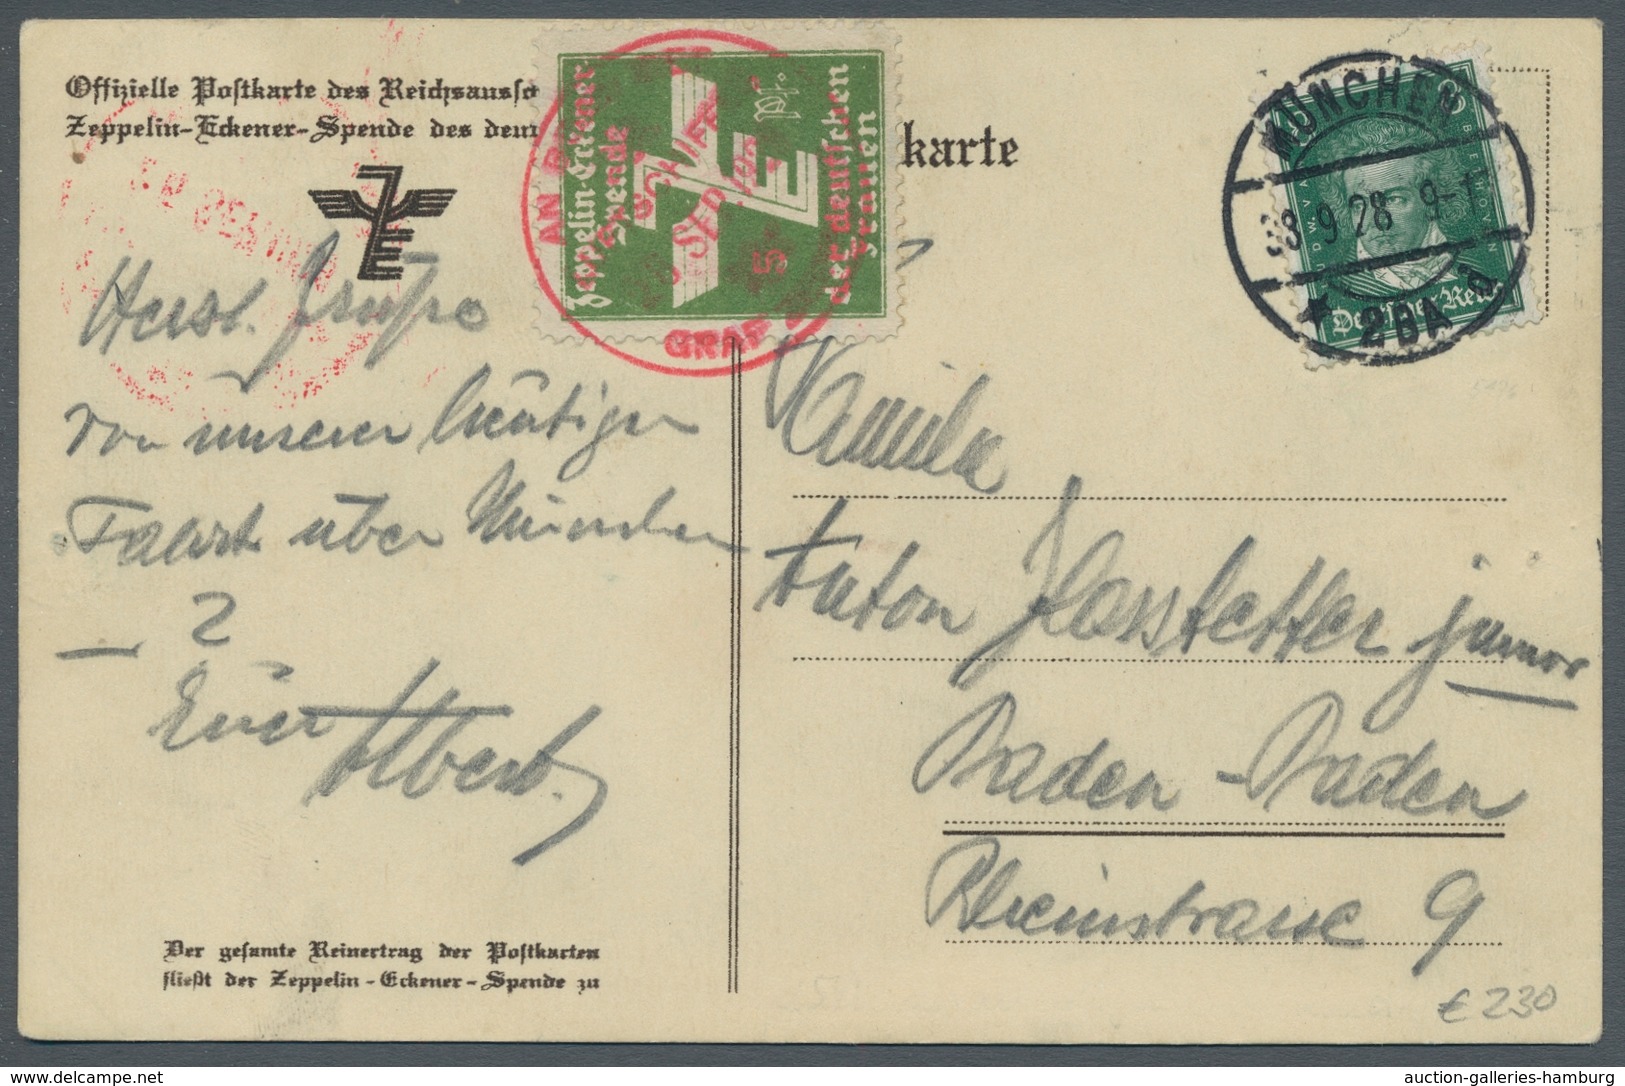 Zeppelinpost Deutschland: 1928 - Fahrt über Dem östl. Teil Süddeutschlands, Offizielle Karte Mit Dre - Airmail & Zeppelin